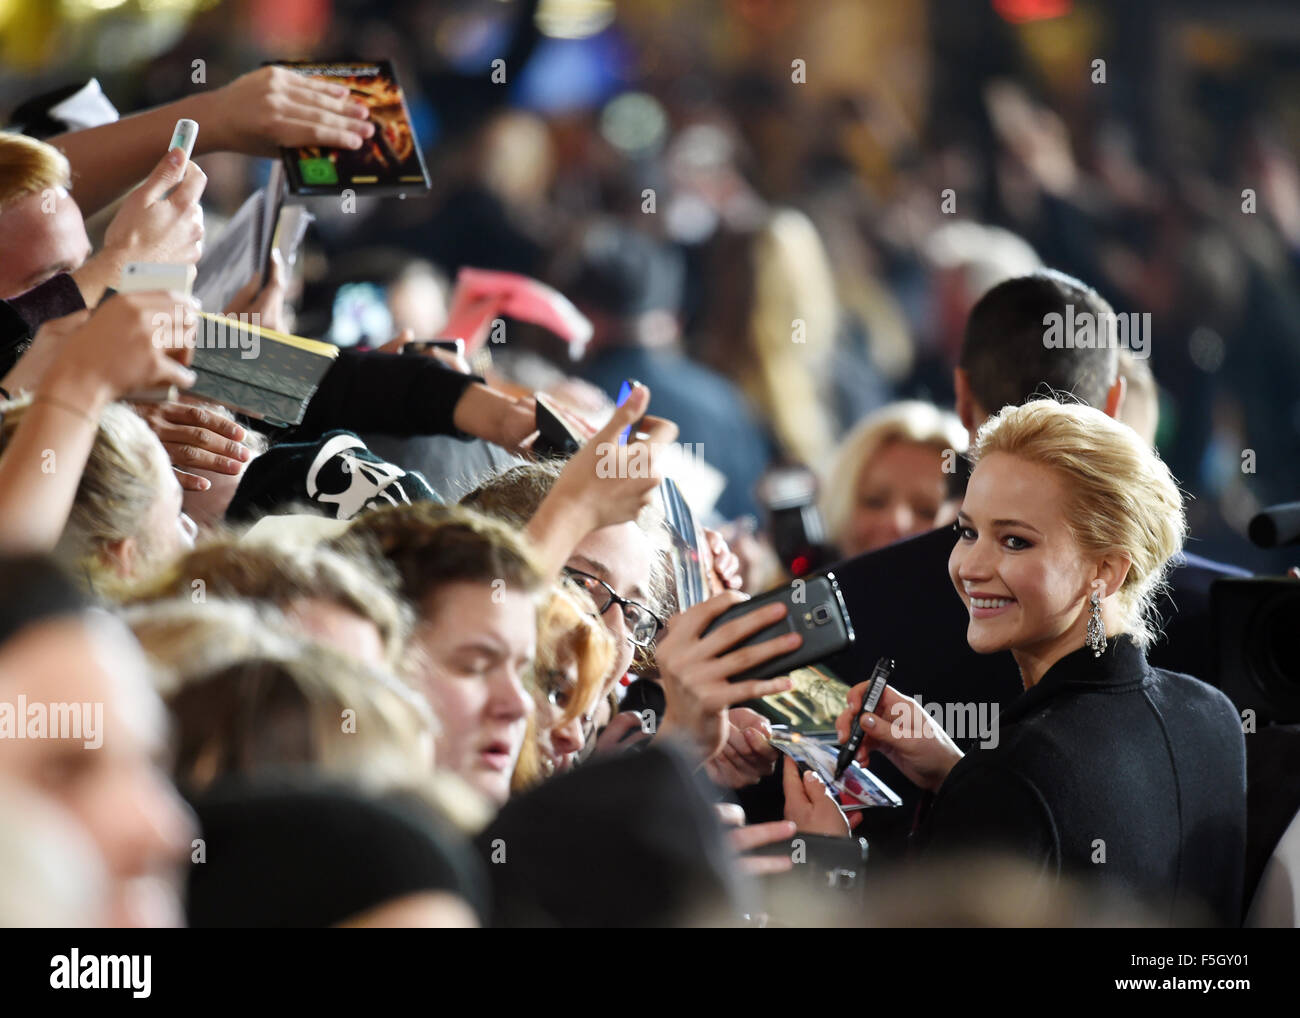 Berlin, Allemagne. 4ème Nov, 2015. L'actrice Jennifer Lawrence arrive et offre aux fans des autographes dans le monde de la premeiere Hunger Games : Clarak Partie 2 au Cinestar cinéma de Berlin, Allemagne, 4 novembre 2015. Photo : JENS KALAENE/DPA/Alamy Live News Banque D'Images